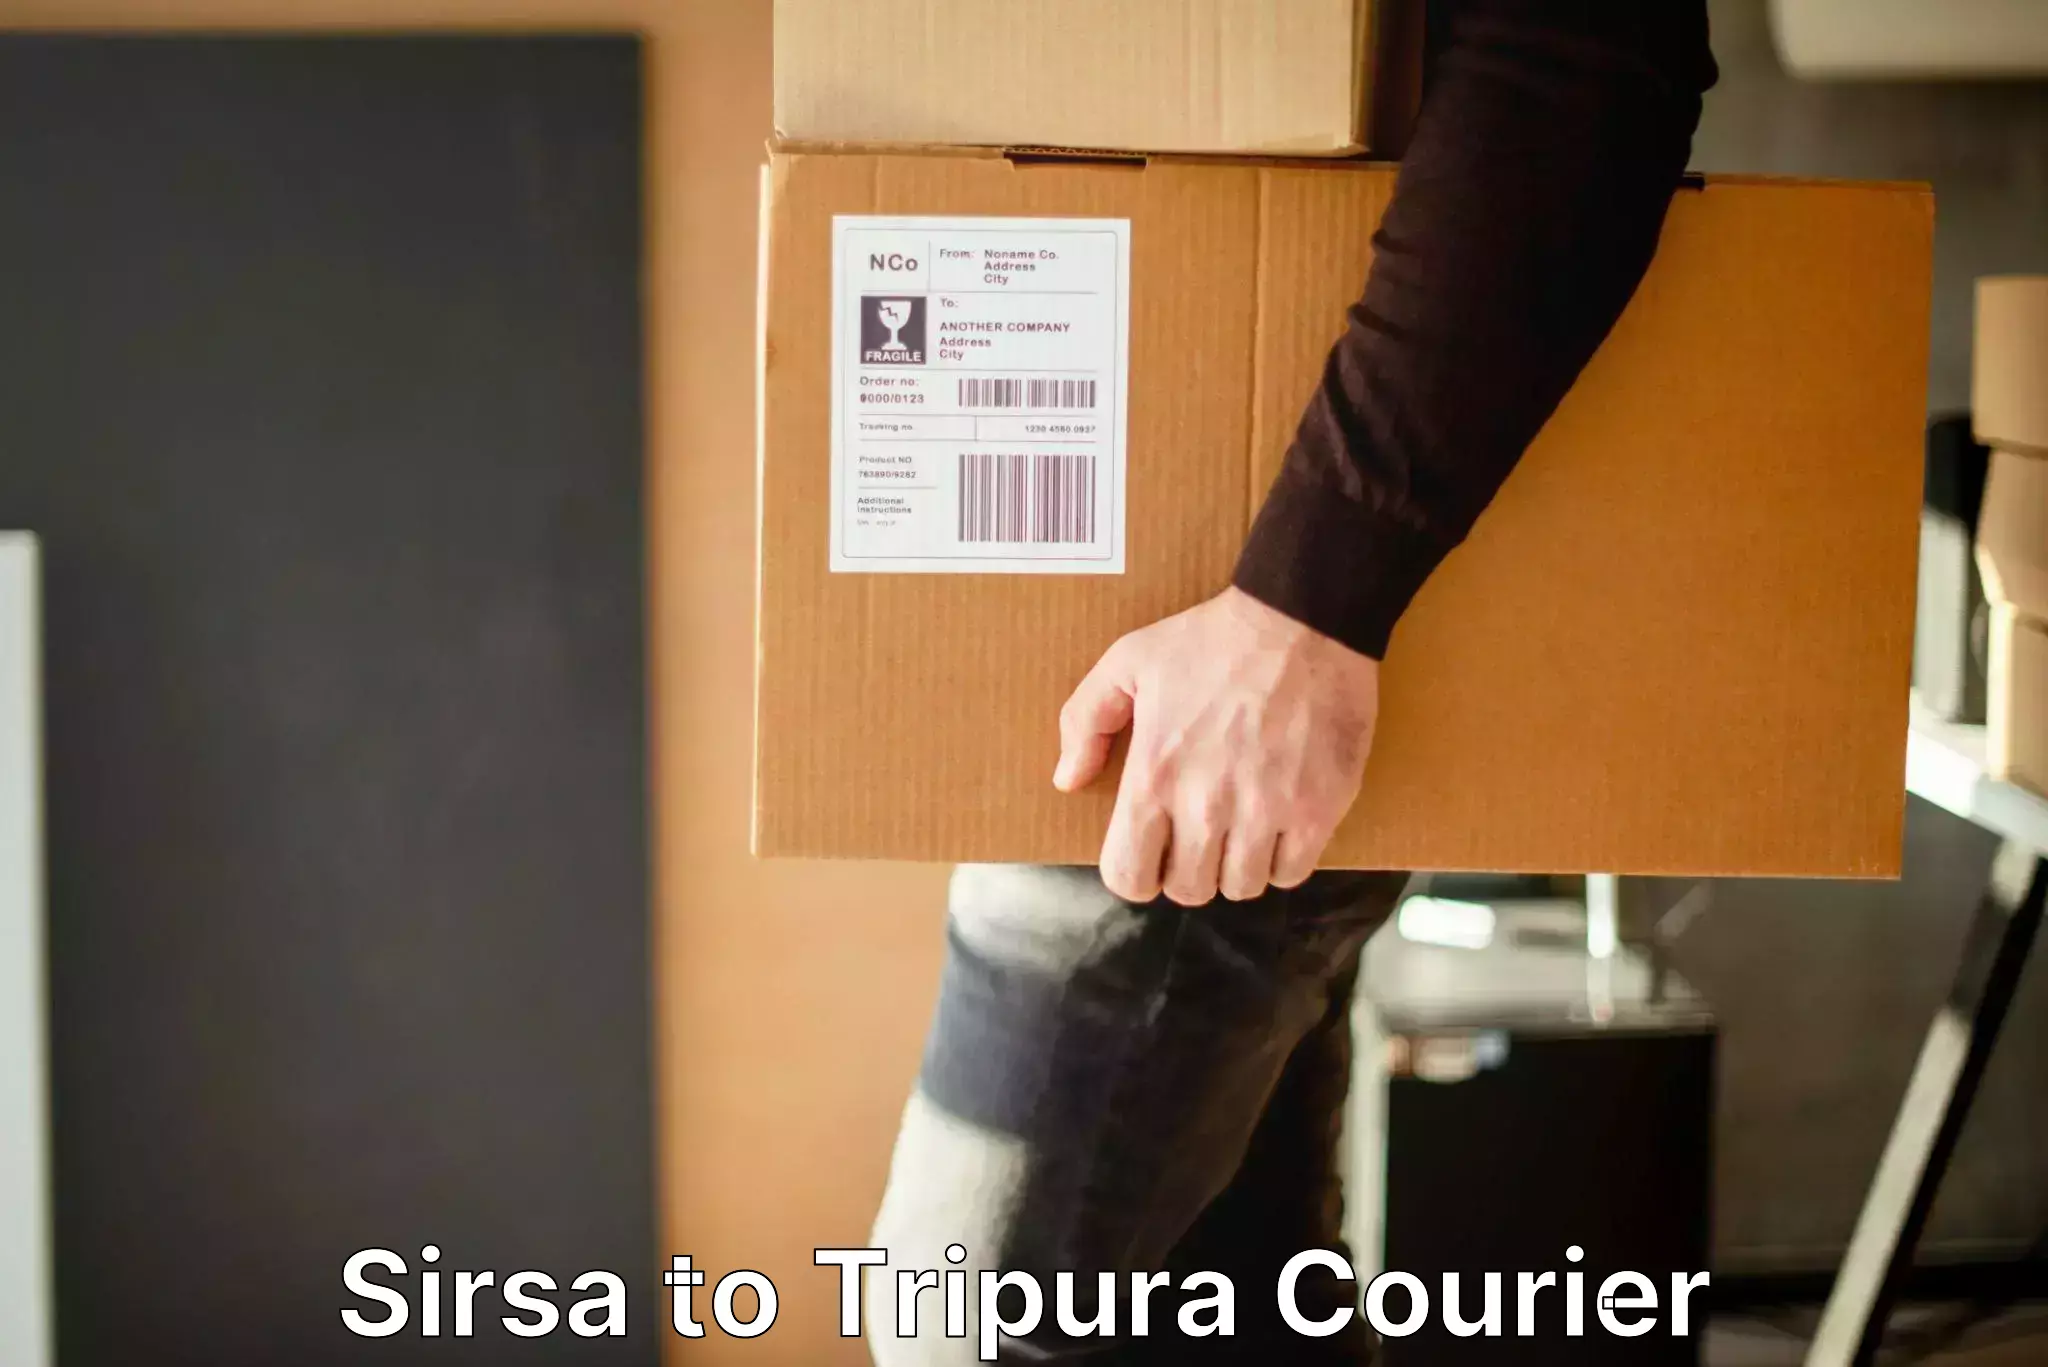 Luggage transport consultancy Sirsa to Manu Bazar